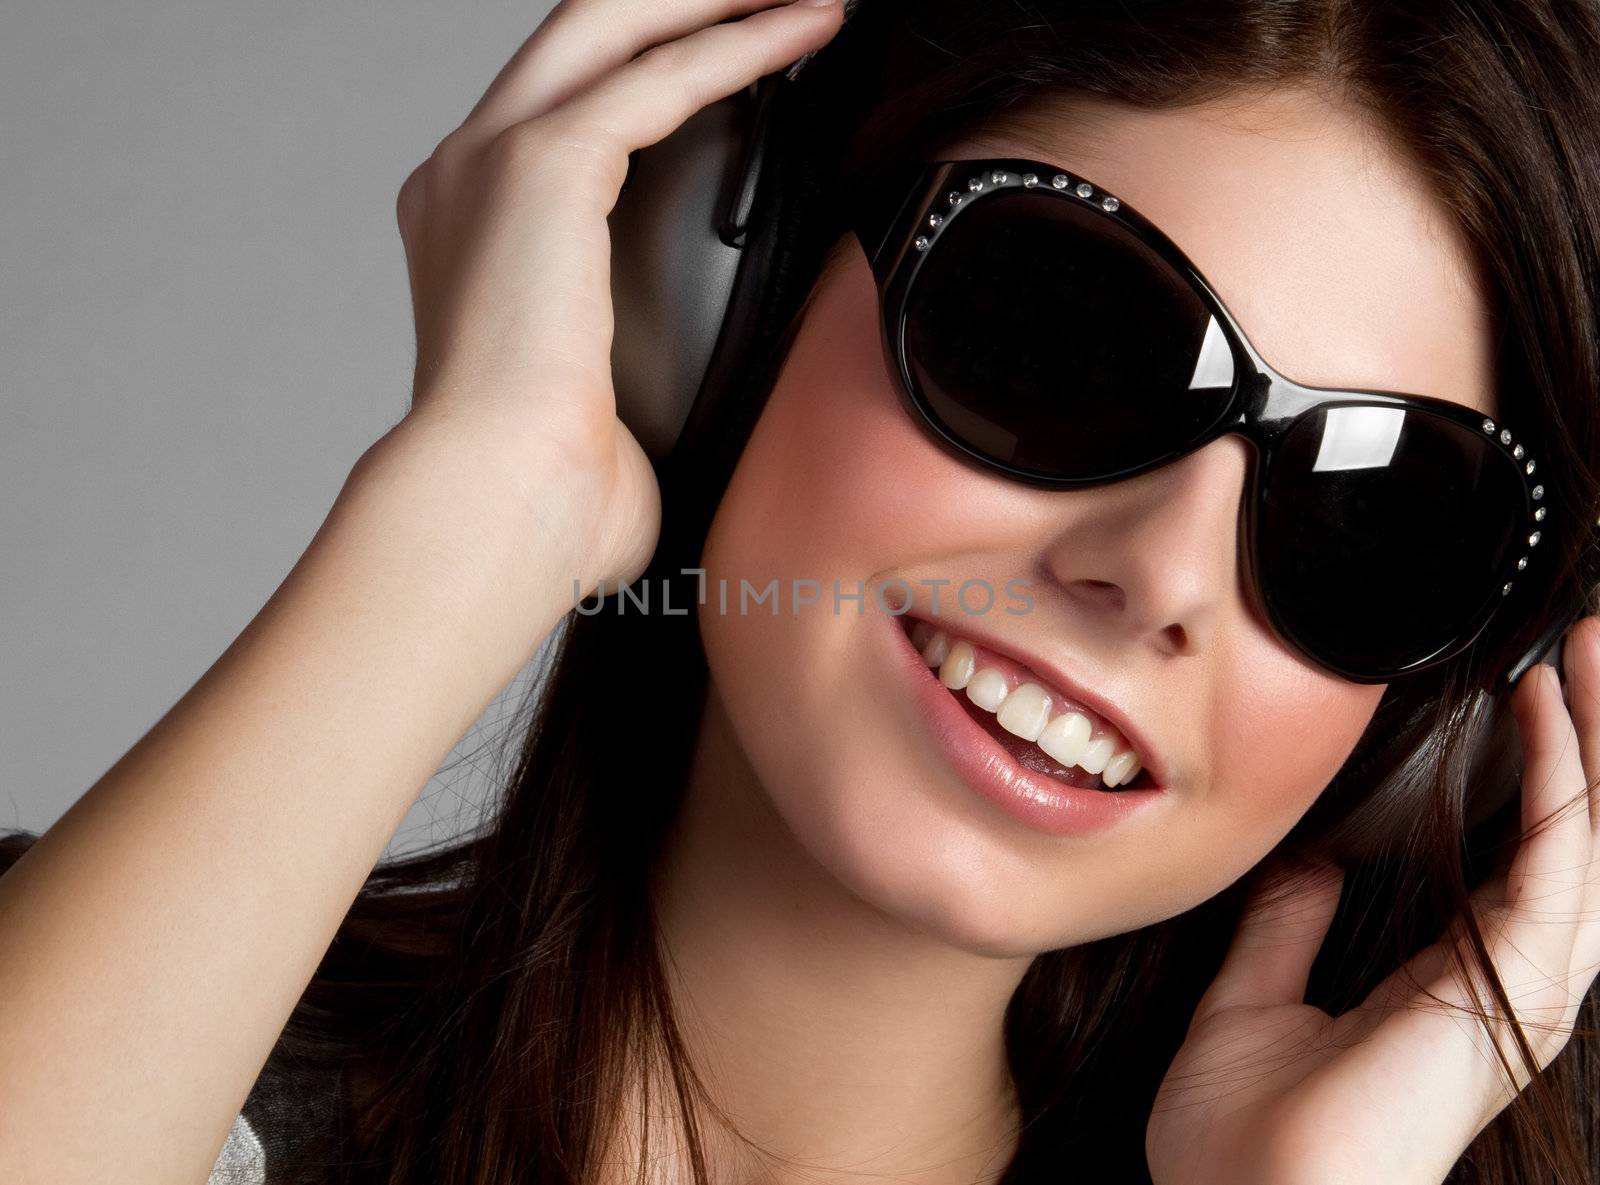 Headphones music girl wearing sunglasses